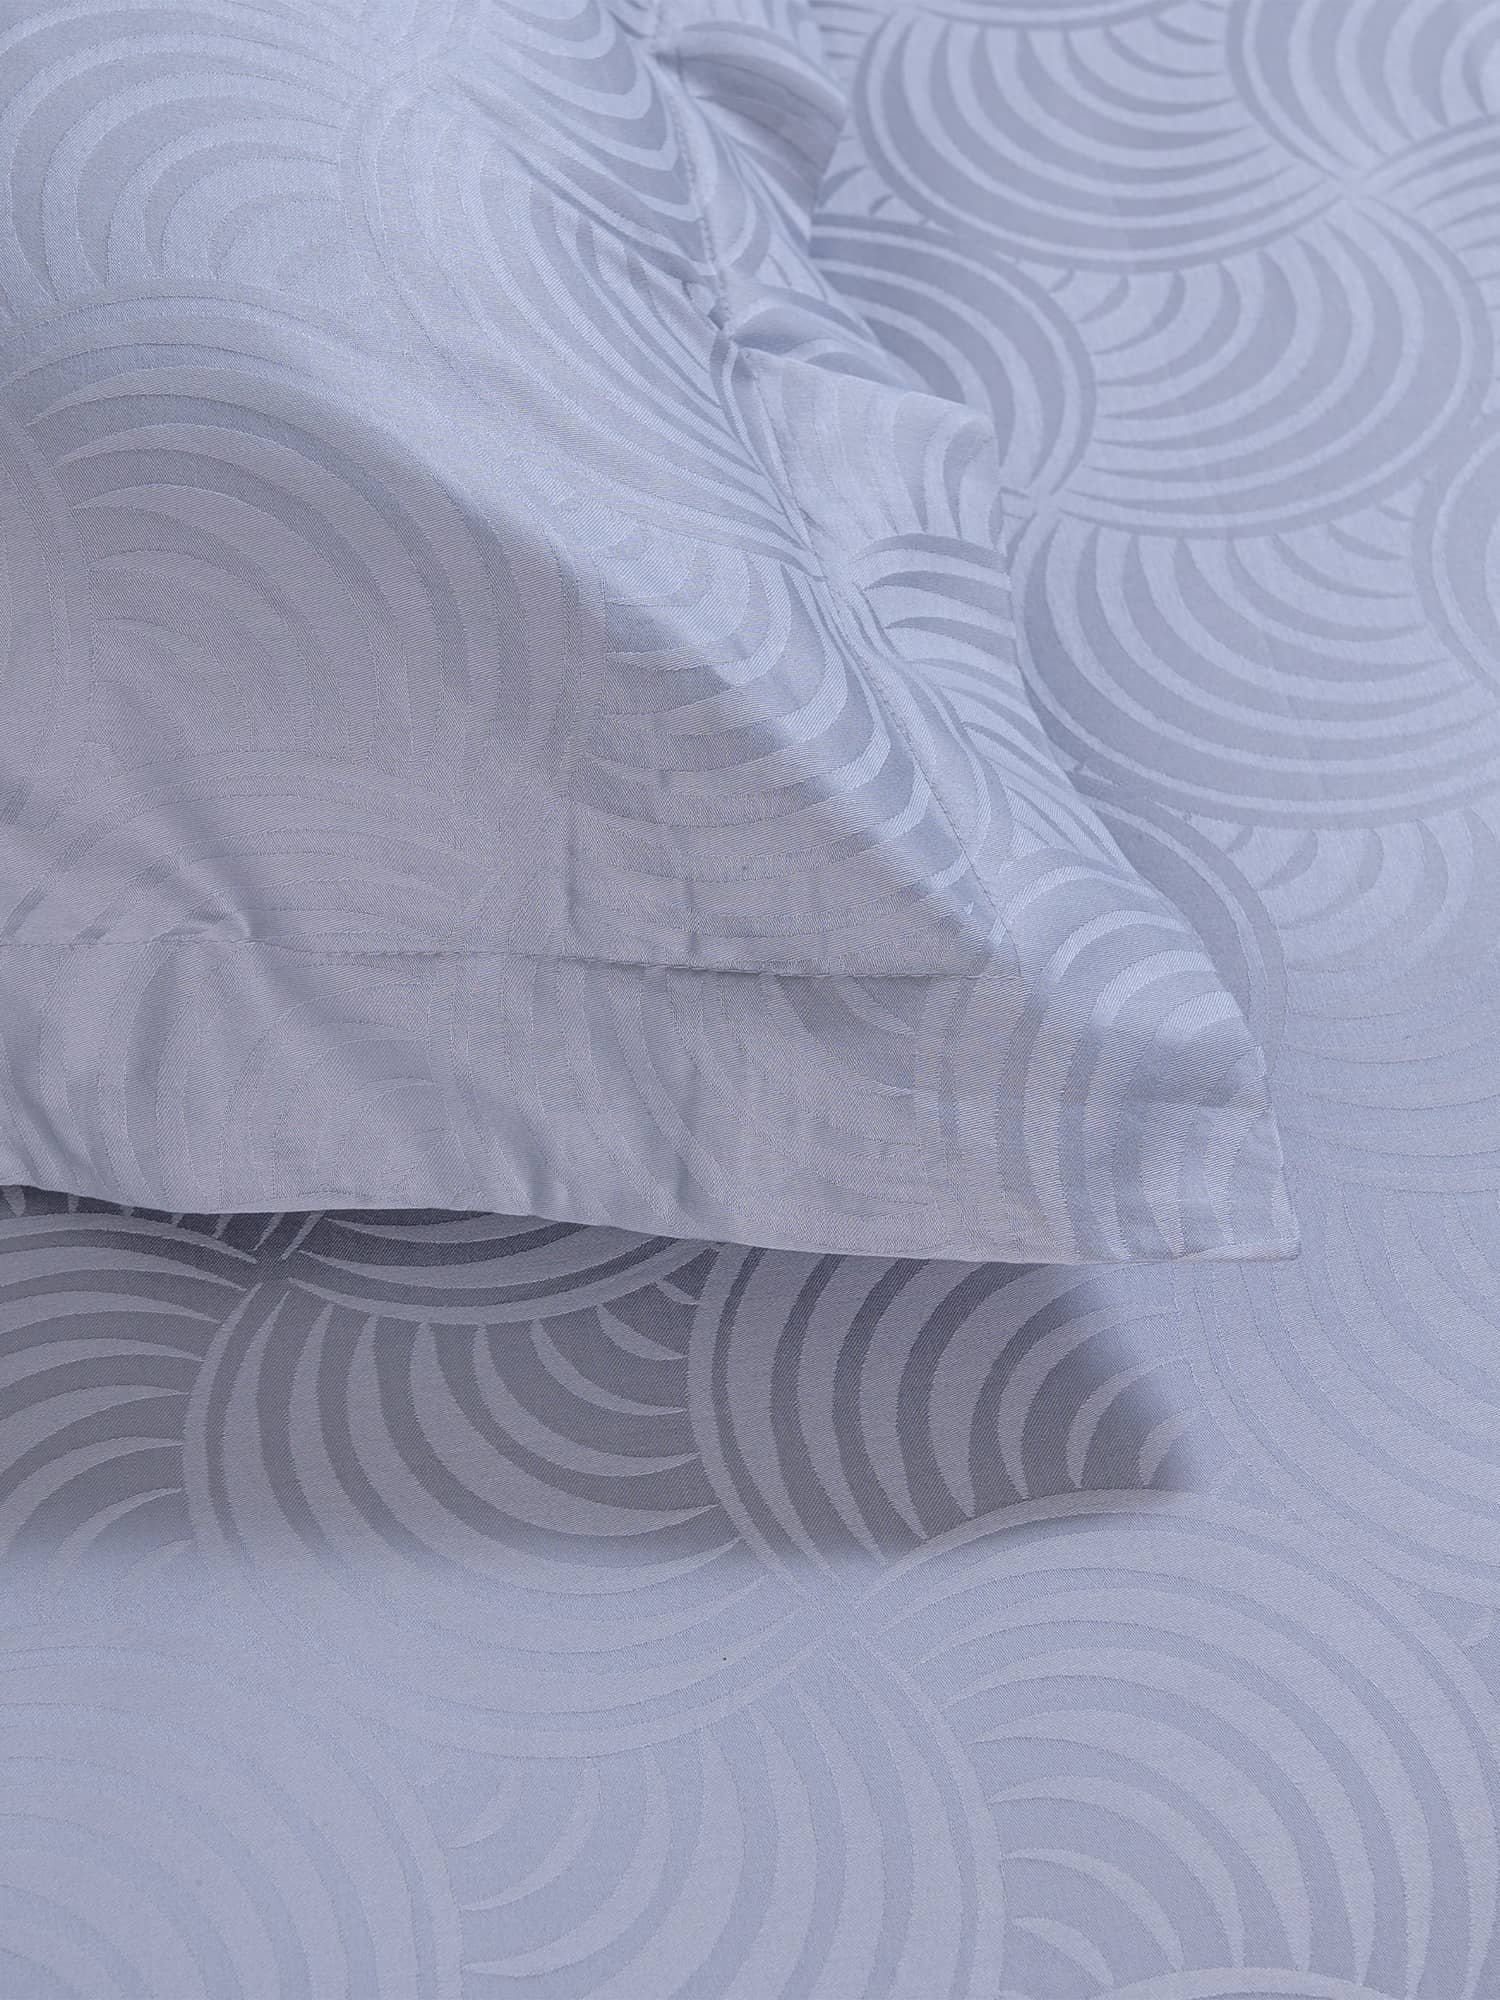 posteljina siva srebrna plahta navlaka jastučnica damast 100 posto pamuk